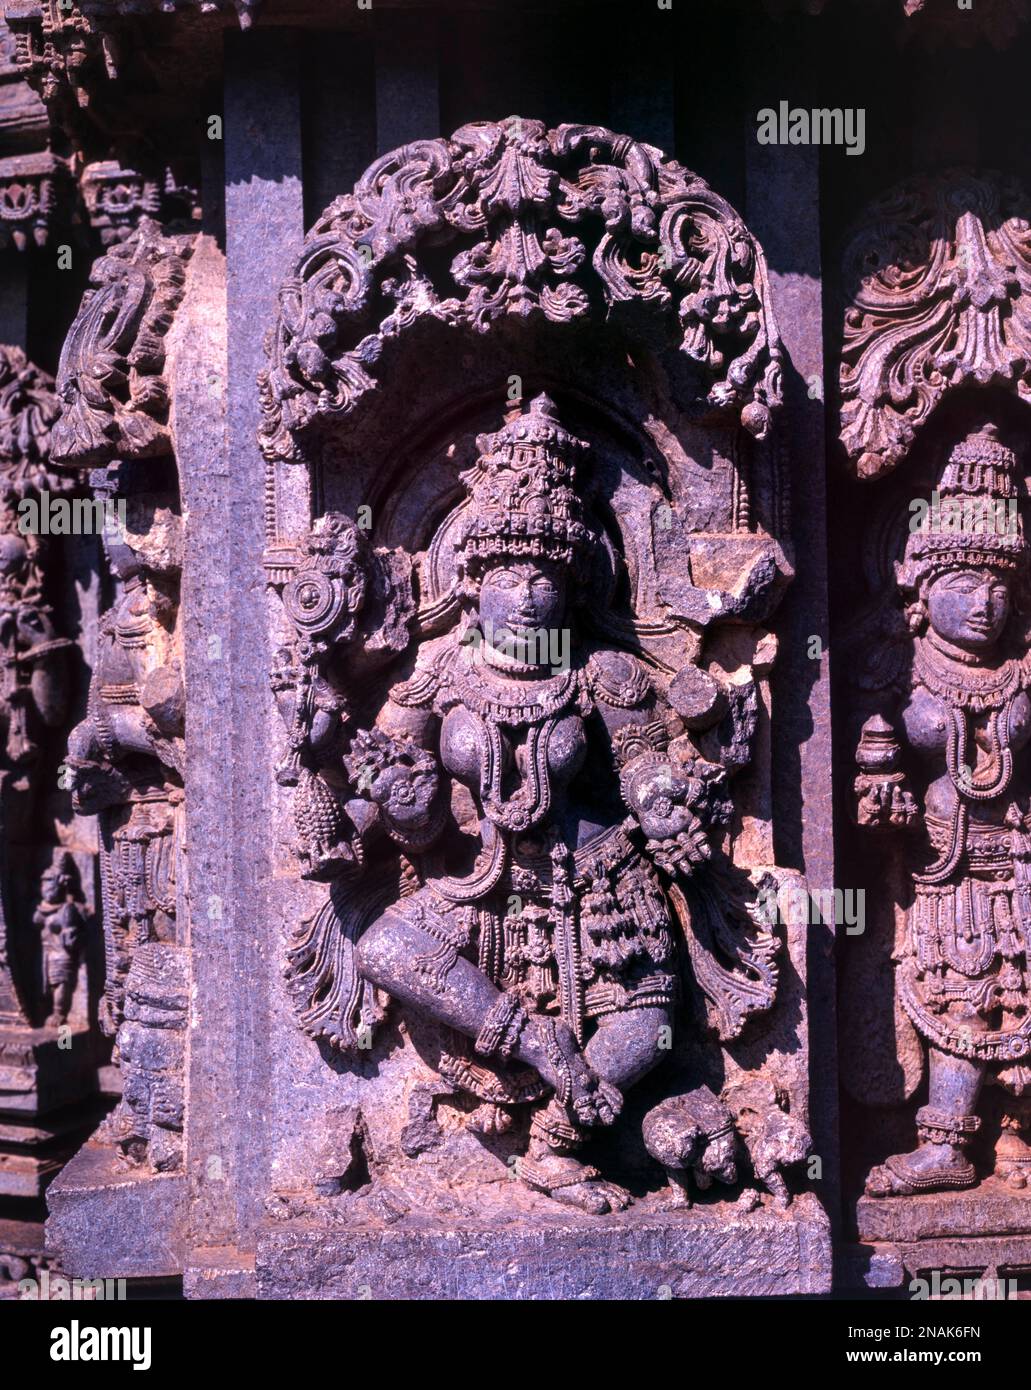 Gros plan de la sculpture en pierre de la danse Lakshmi dans l'architecture Hoysala à Somnathpur, Karnataka, Inde Banque D'Images